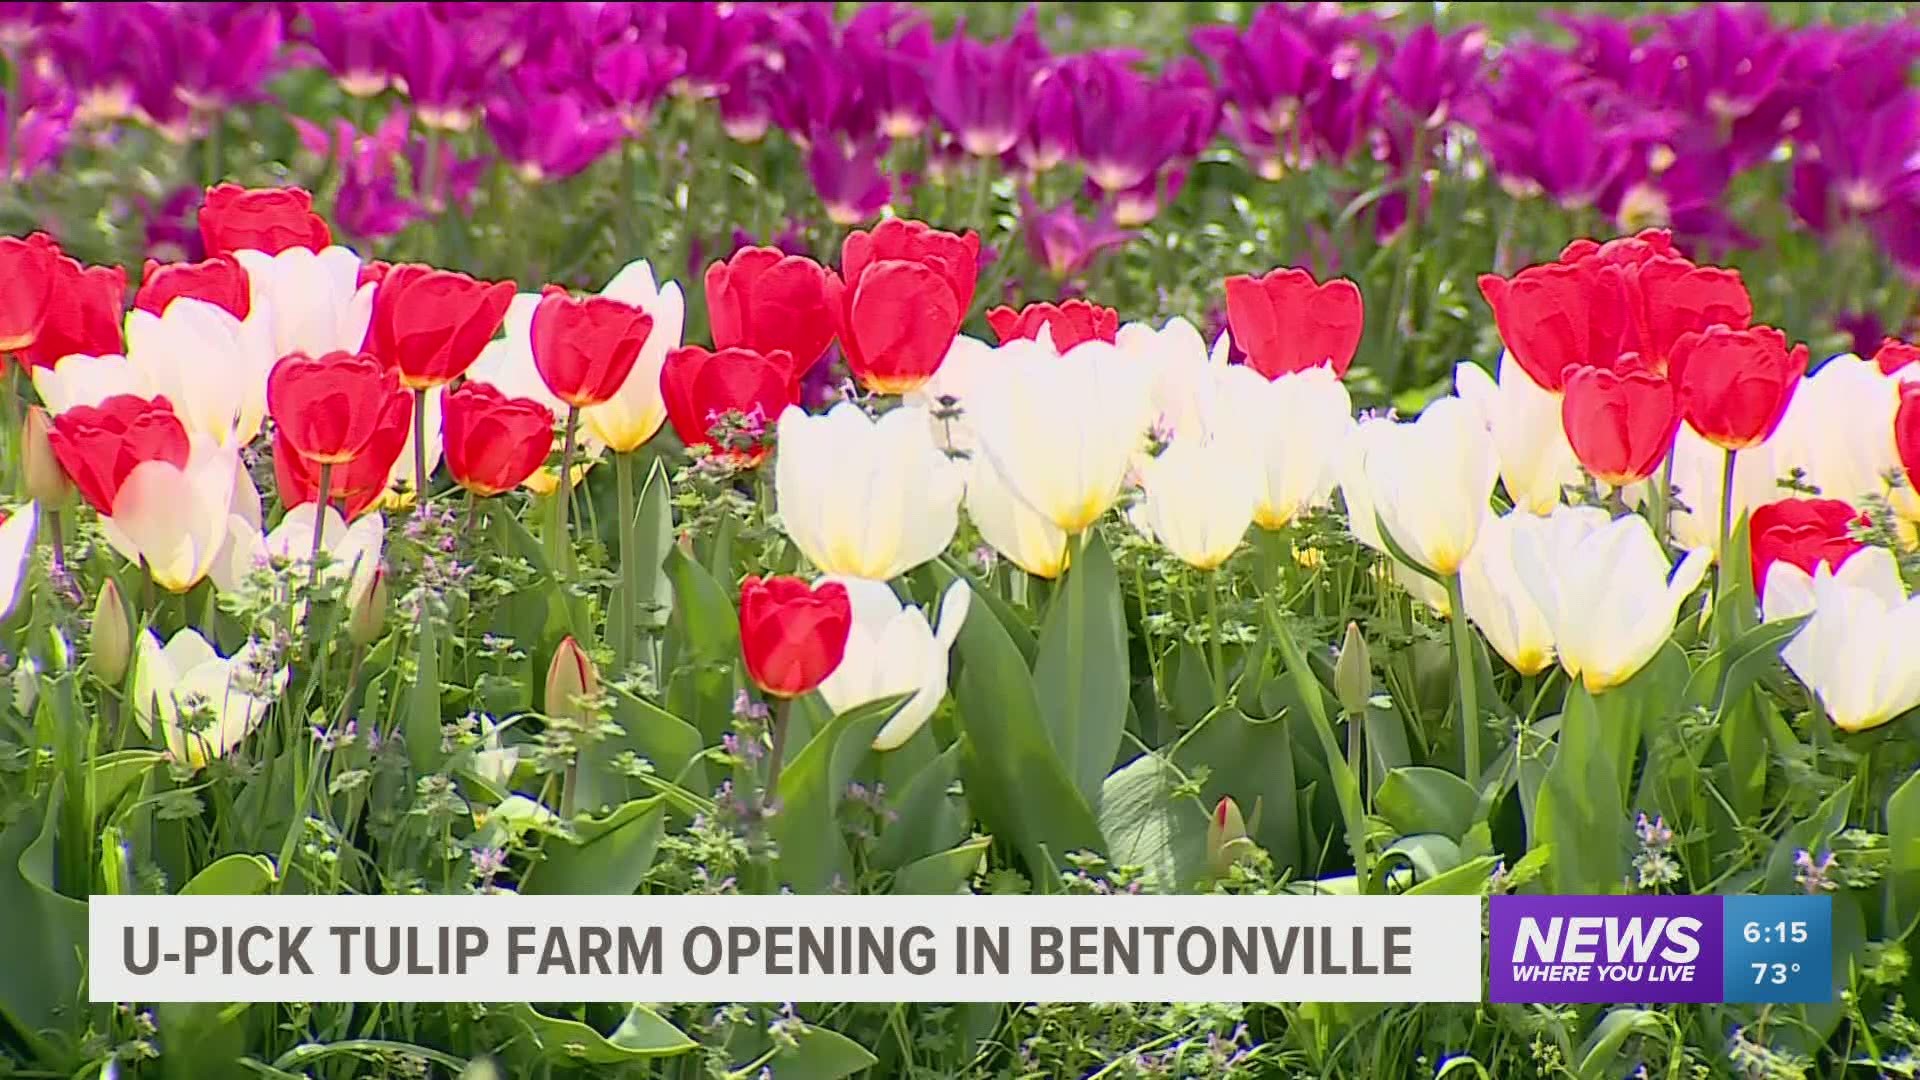 U-Pick tulip farm opening in Bentonville